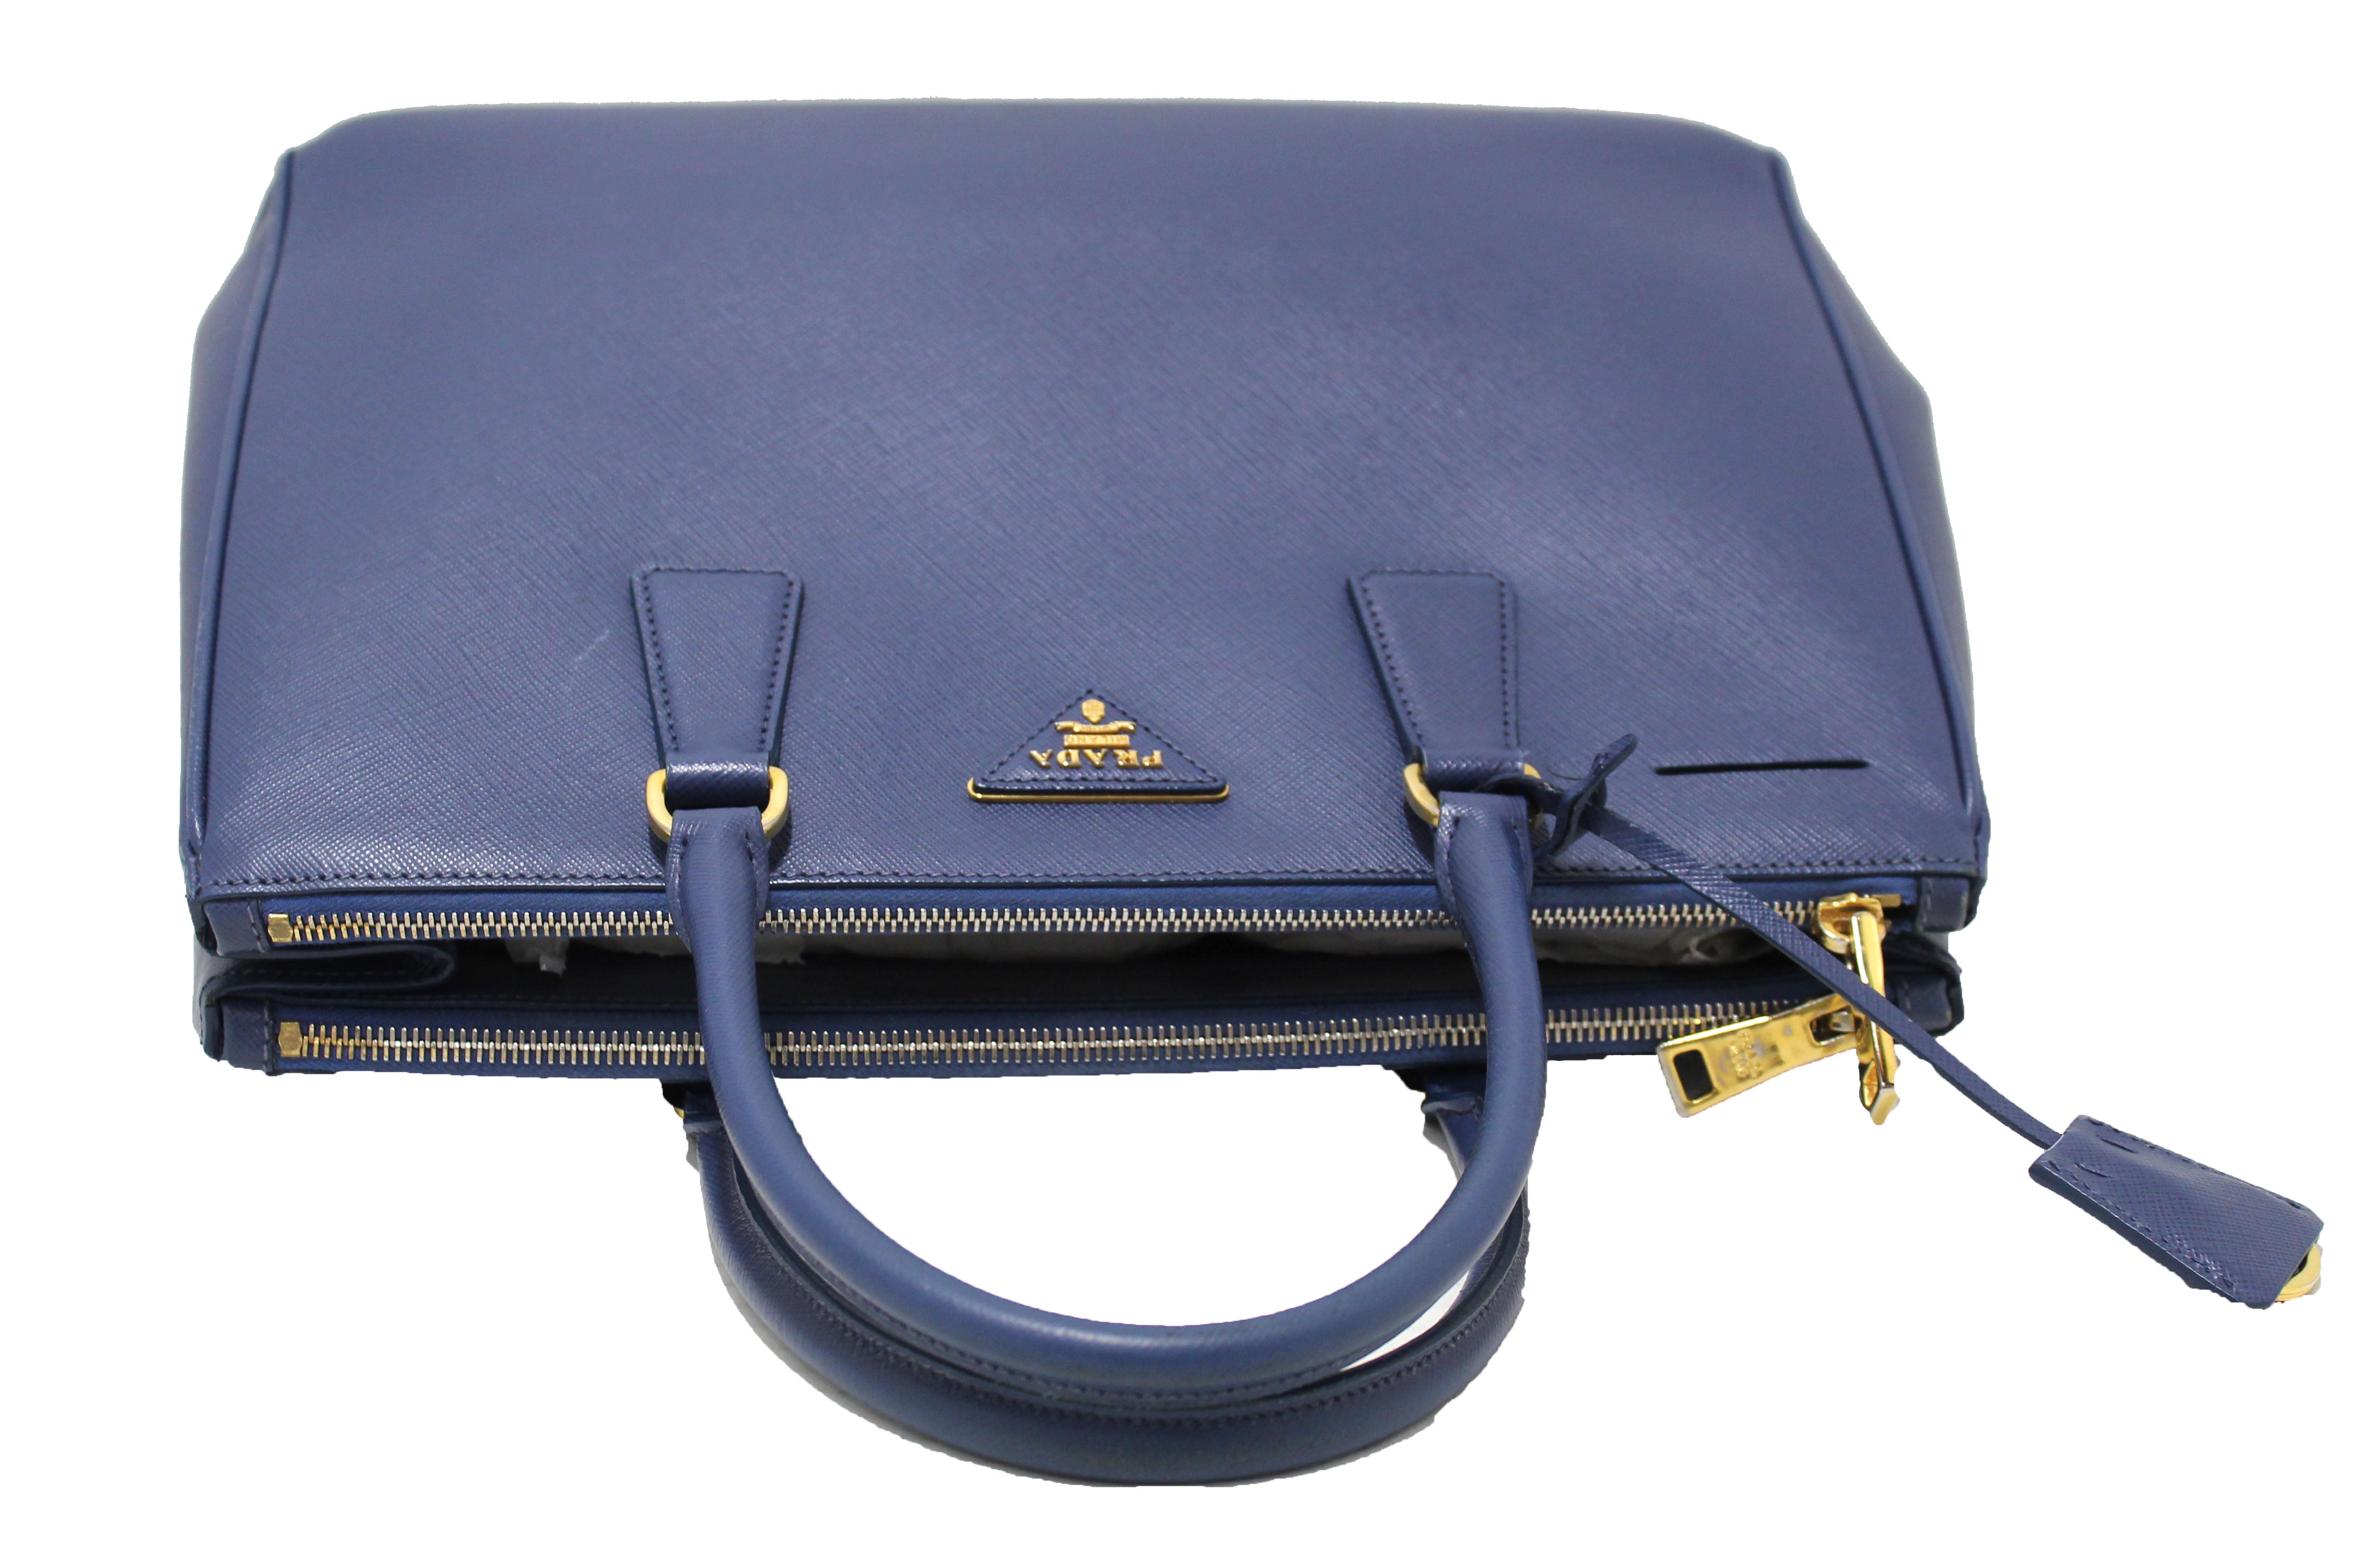 Authentic Prada Blue Saffiano Lux Leather Galleria Large Tote Bag